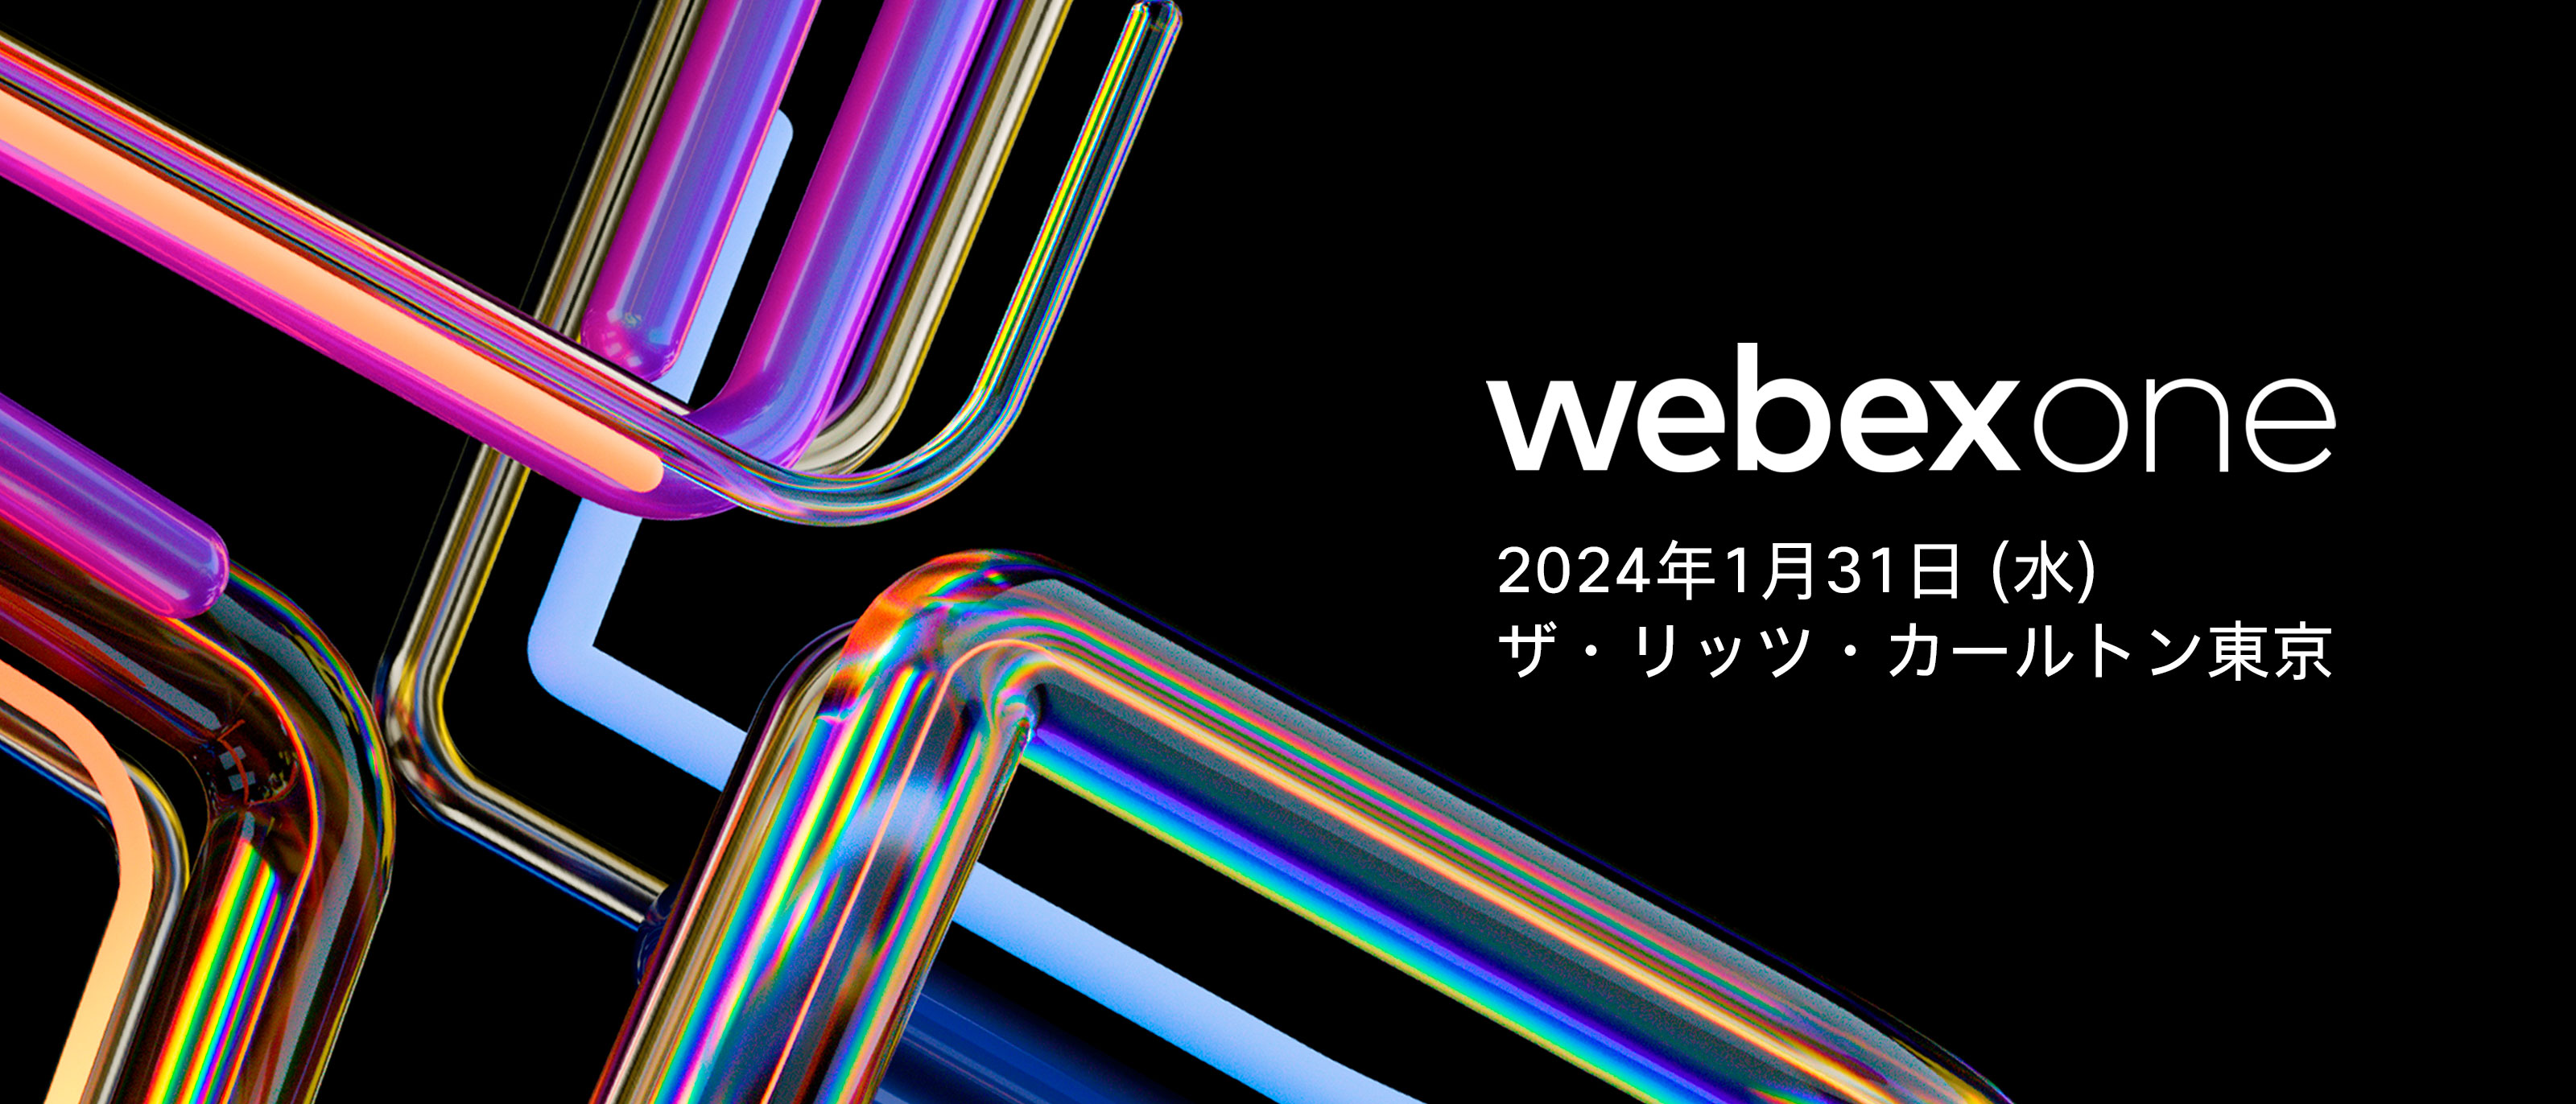 WebexOne Japan